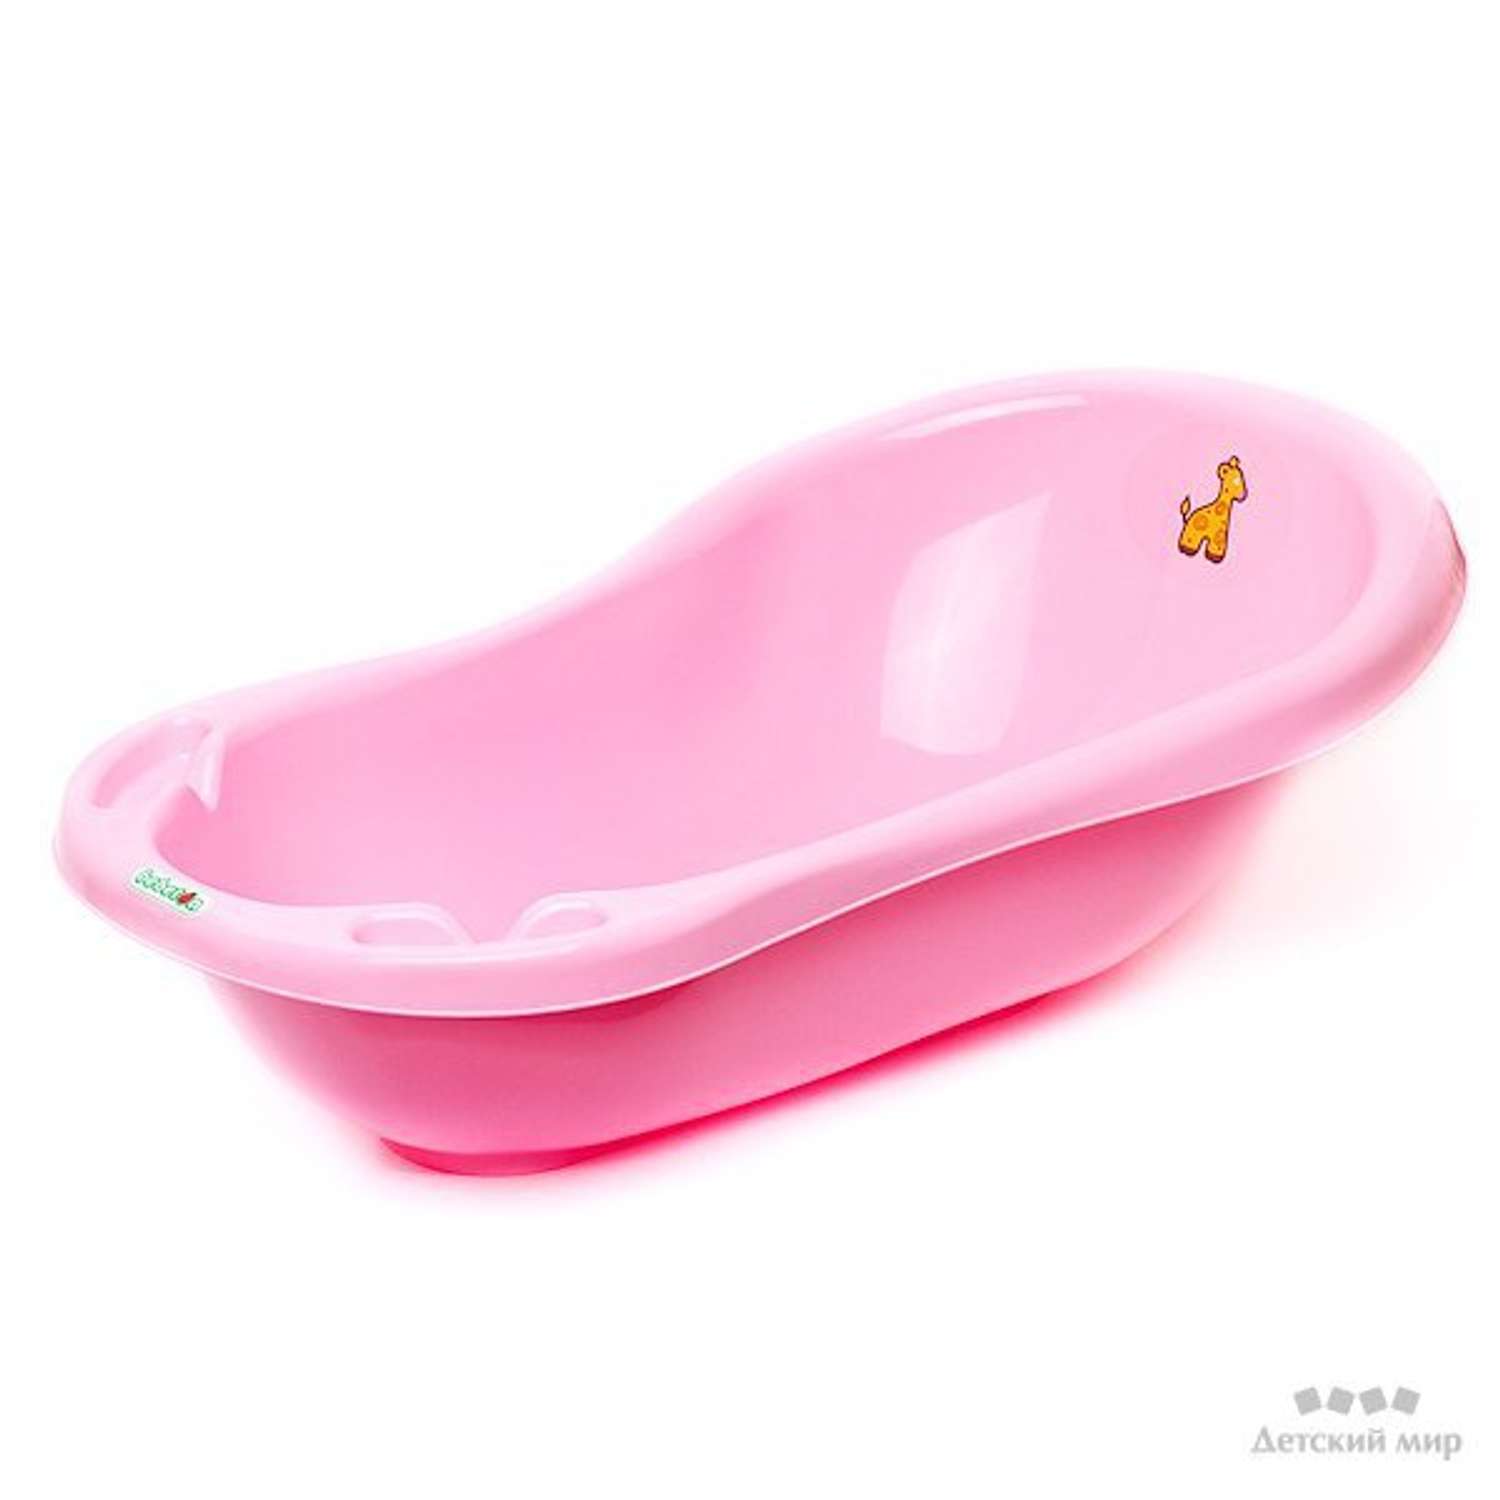 Детские ванночки авито. Ванночка бебетон. Детская ванна Babyton 100. Ванночка Babyton 46л. М3222 ванна детская "Карапуз"(розовый).